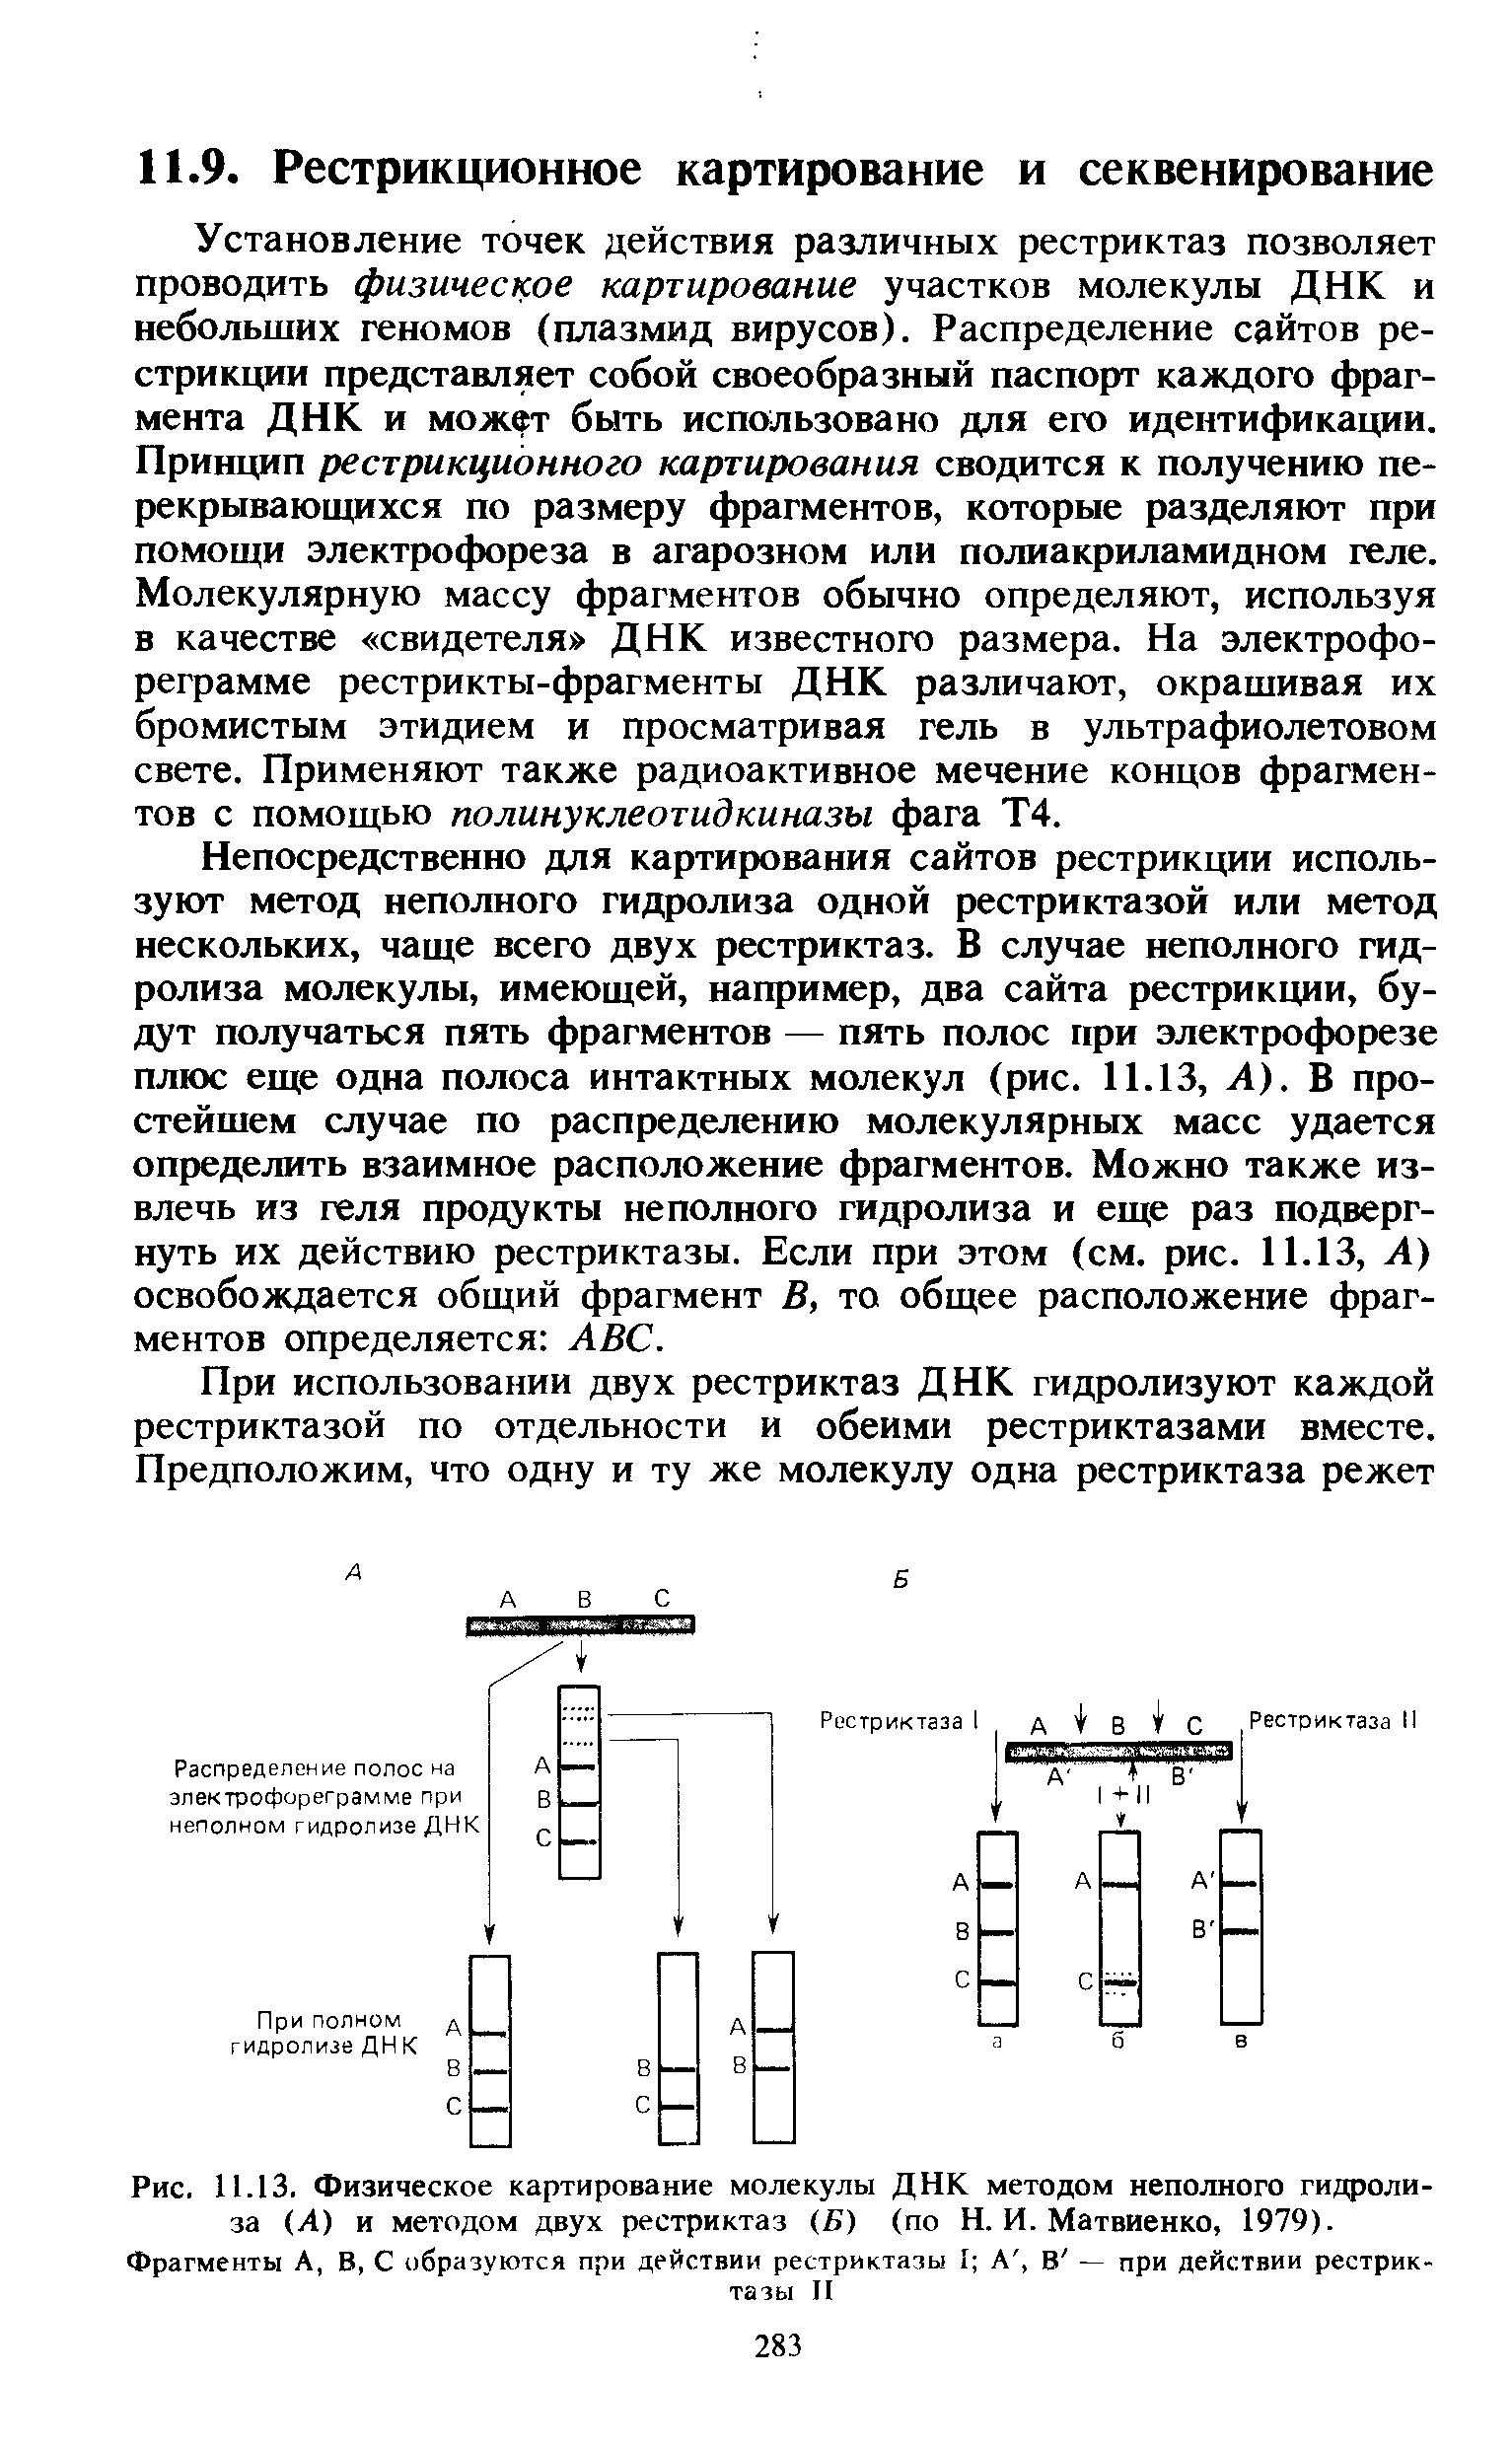 Рис. 11.13. Физическое картирование молекулы ДНК методом неполного гидролиза (А) и методом двух рестриктаз (Б) (по Н. И. Матвиенко, 1979).